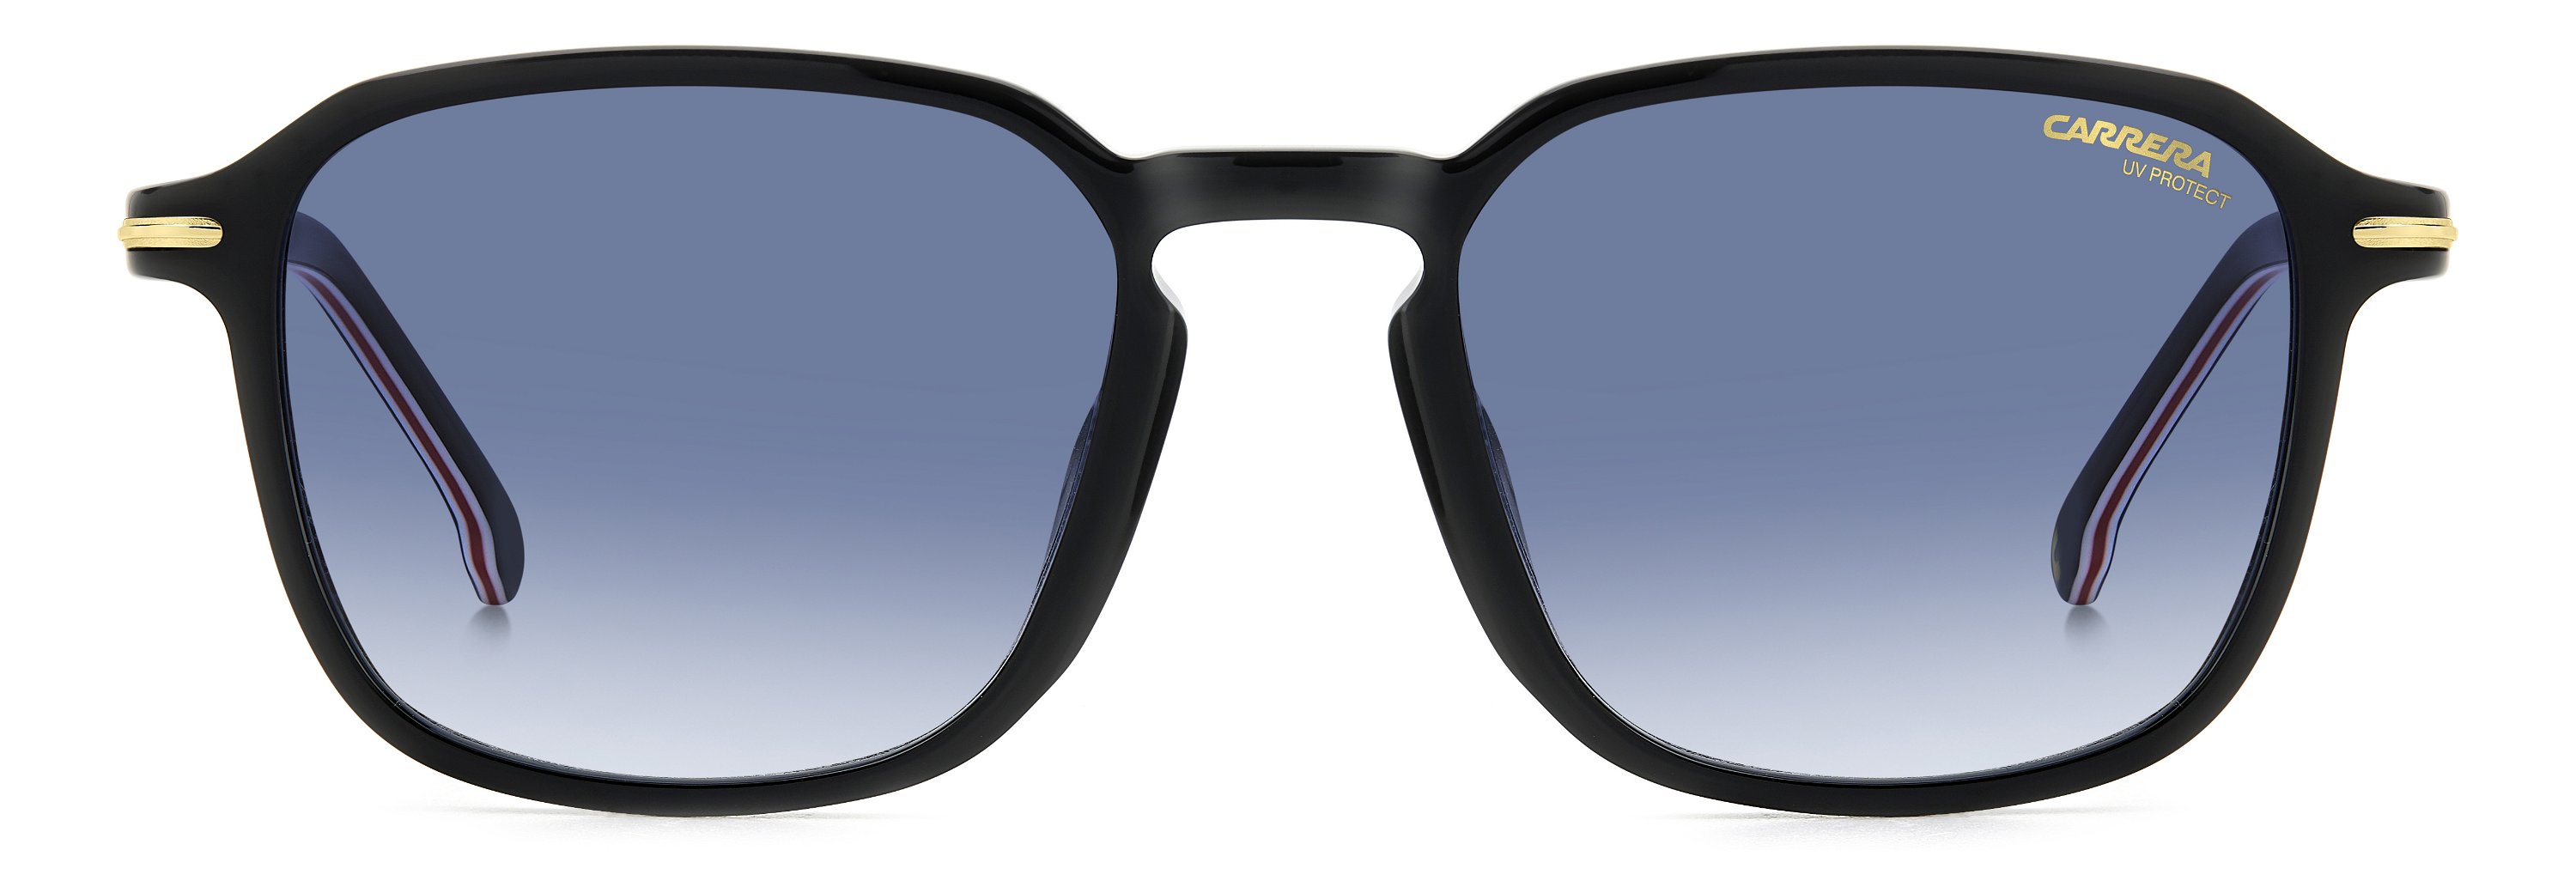 Das Bild zeigt die Sonnenbrille 328/S 807 von der Marke Carrera in schwarz.